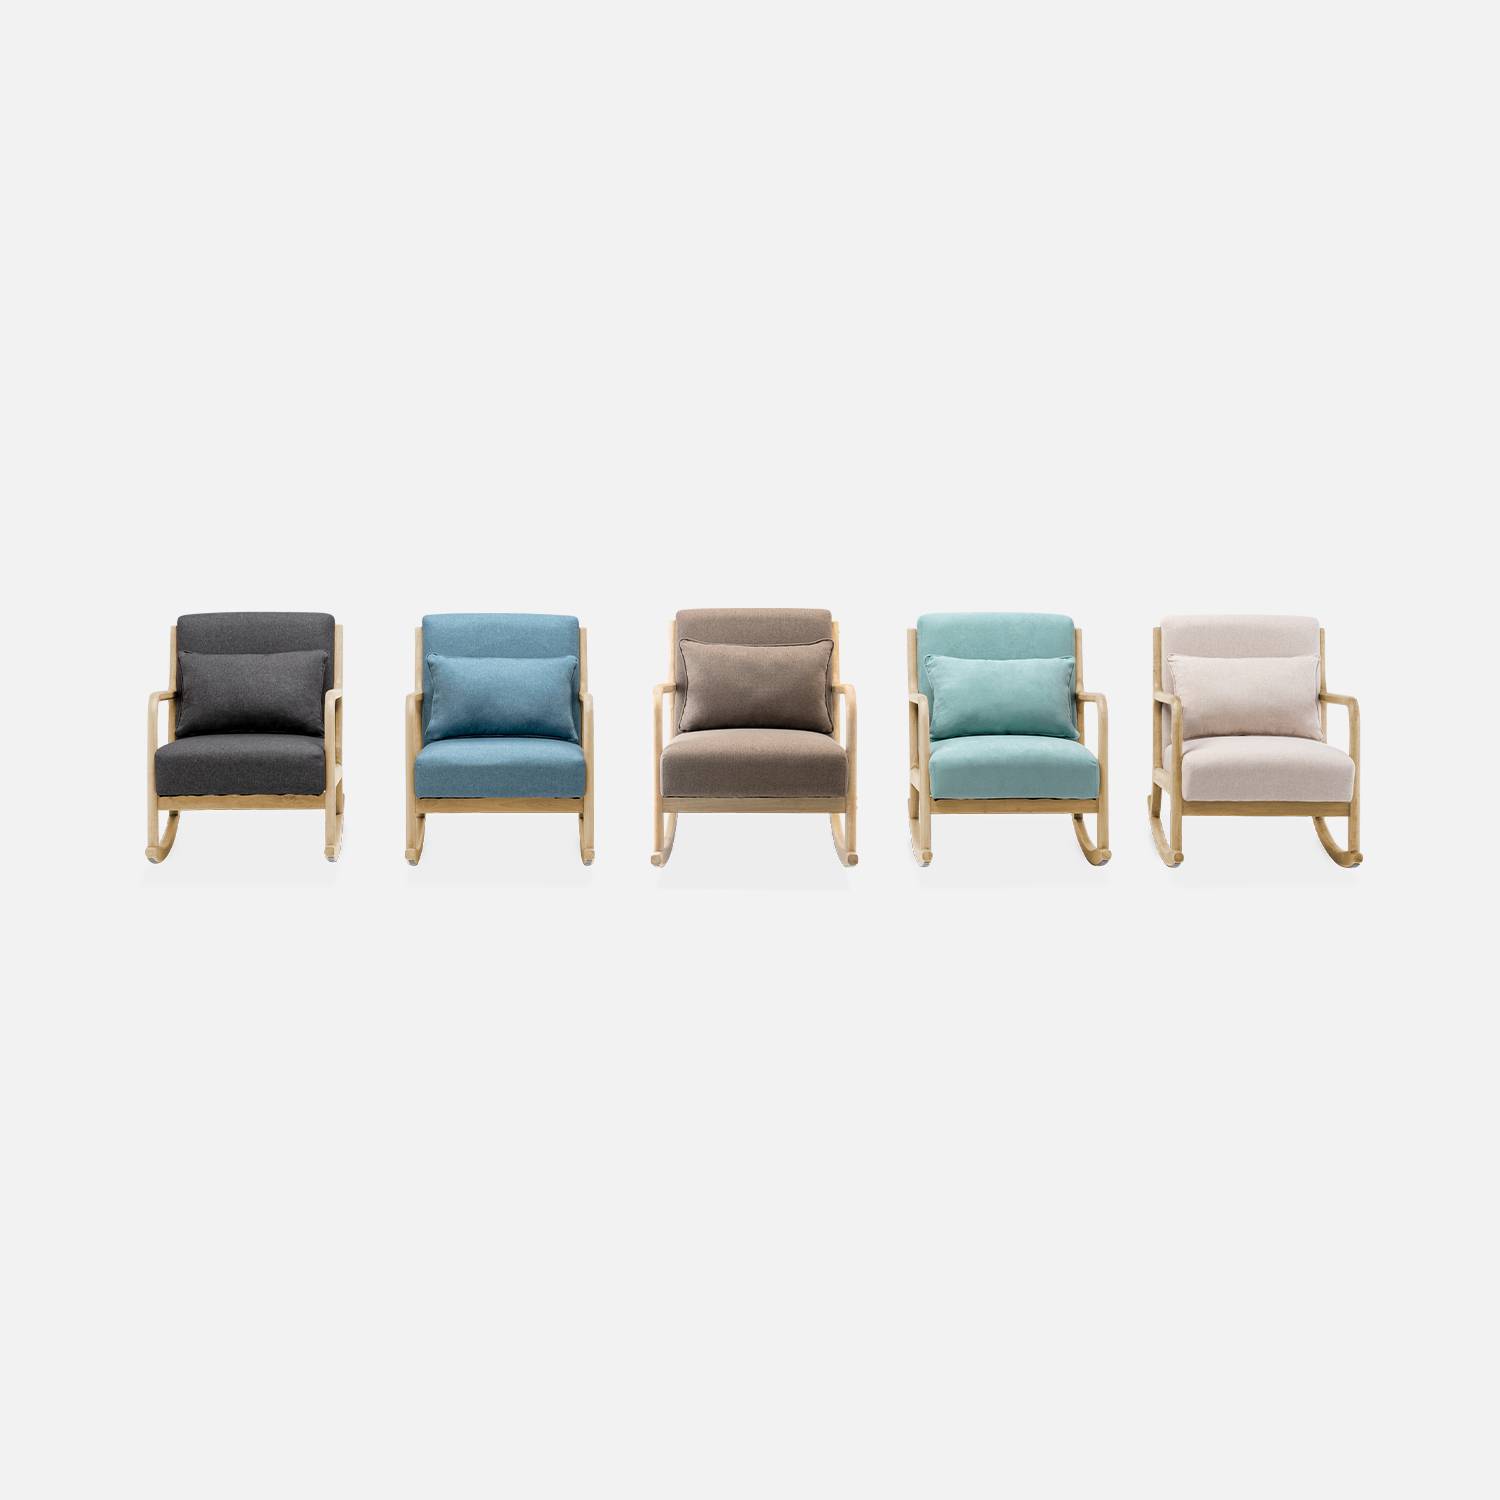 Fauteuil à bascule design en bois et tissu, 1 place, rocking chair scandinave, bleu Photo7